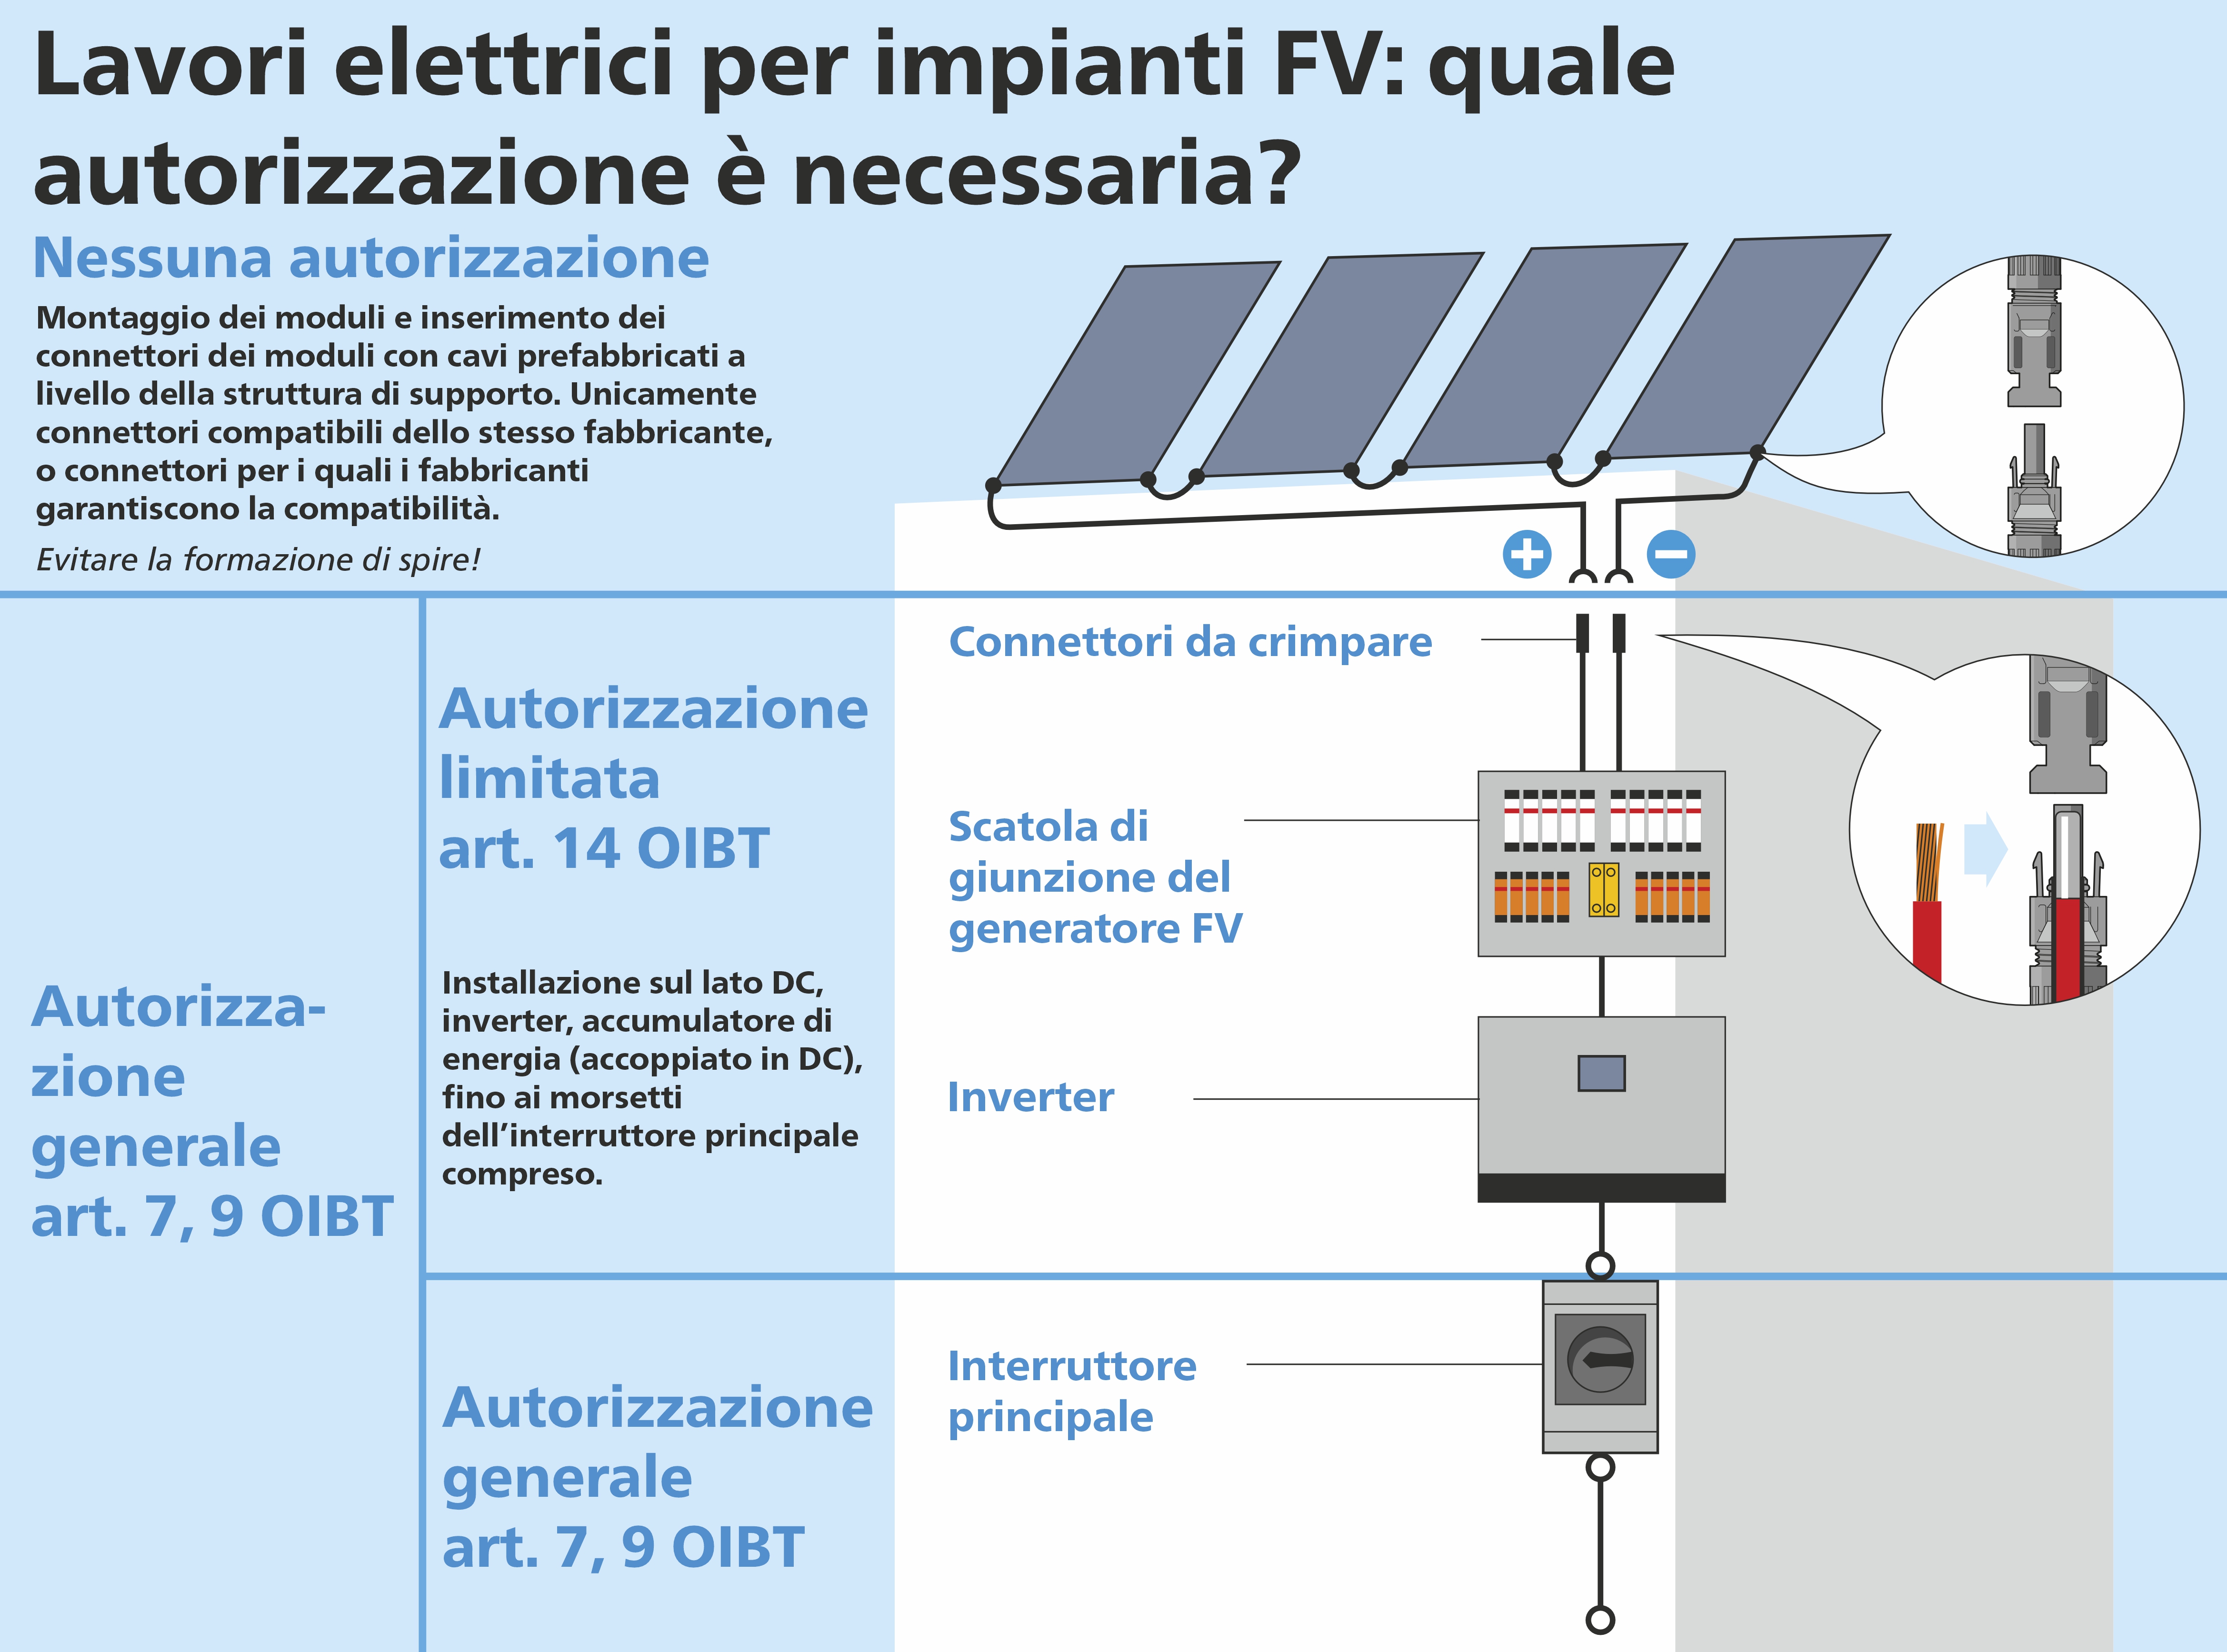 NIV 14 - Il grafico mostra in modo schematico chi è autorizzato per quali installazioni elettriche. 